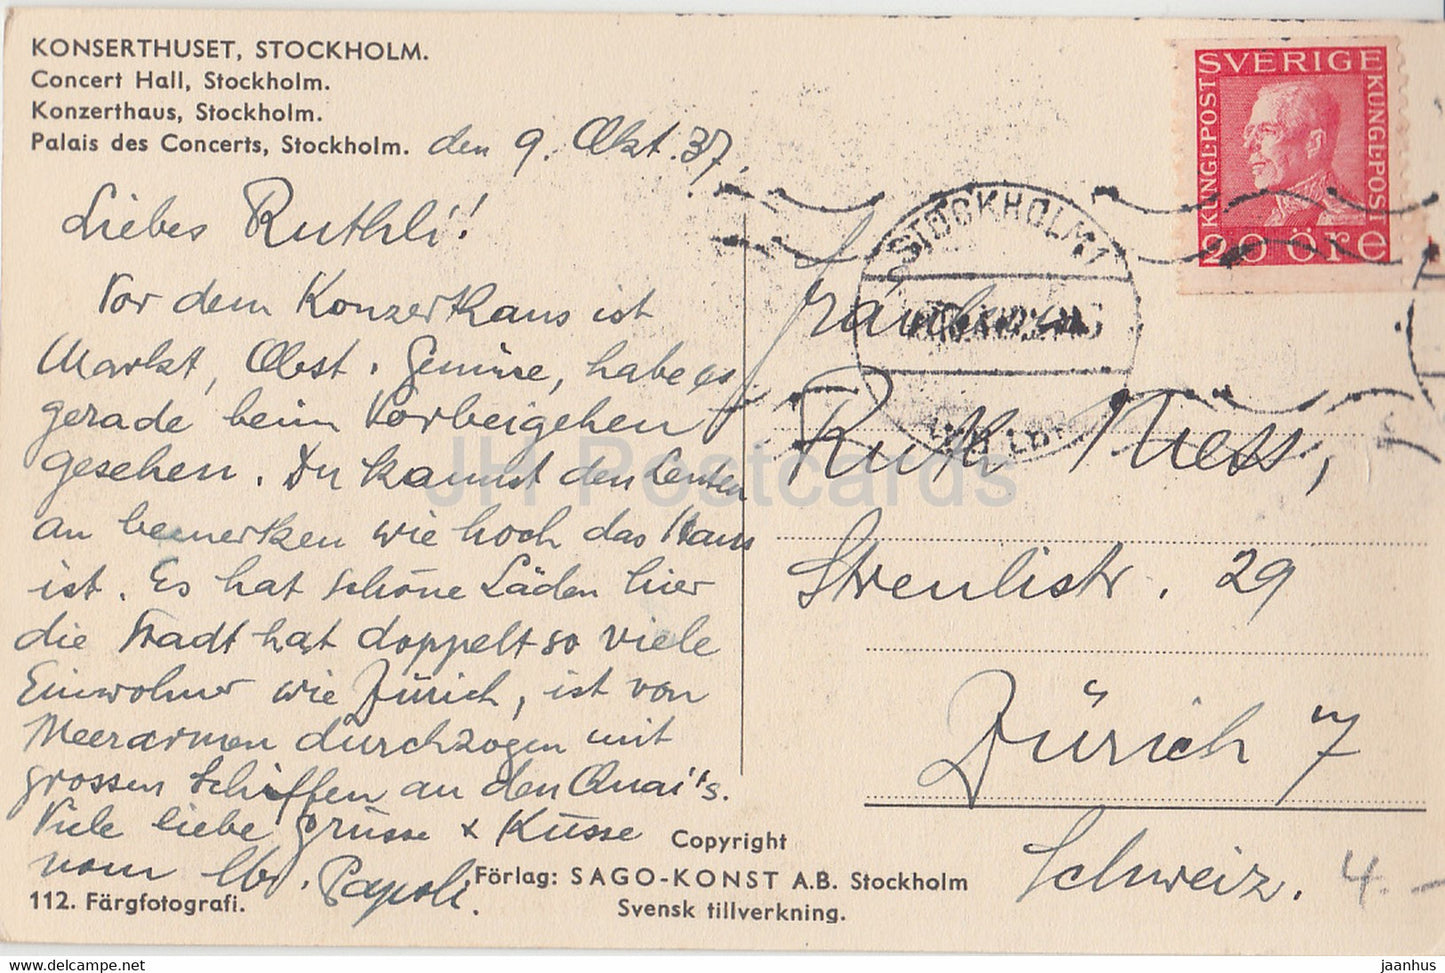 Stockholm - Konserthuset - Konzerthalle - alte Postkarte - 1937 - Schweden - gebraucht